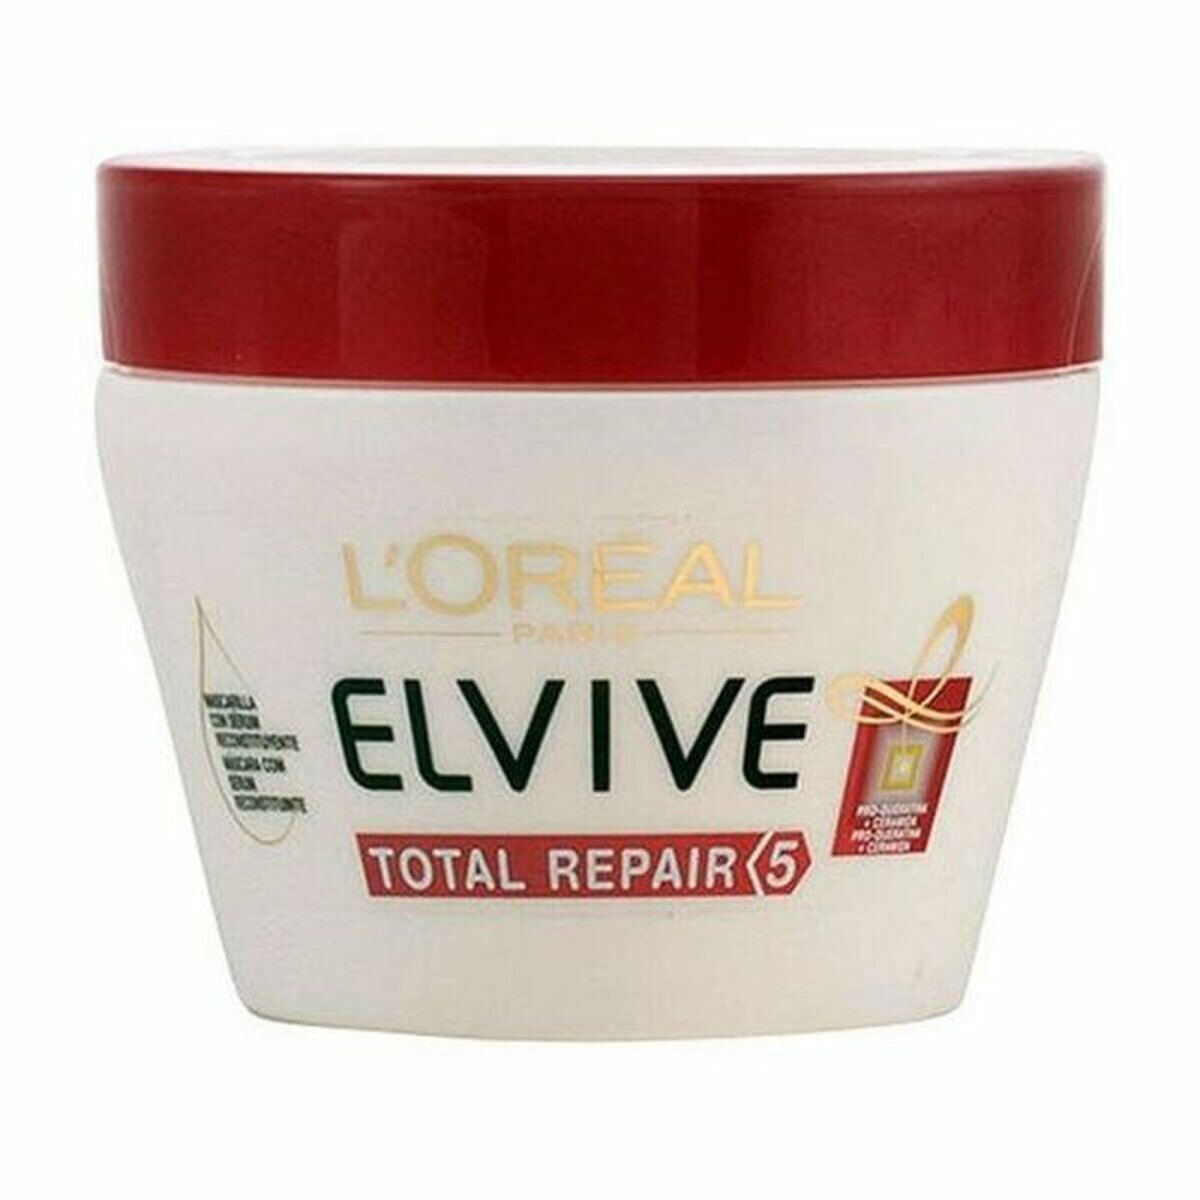 Восстанавливающая капиллярная маска Total Repair L'Oreal Make Up Elvive 300 ml